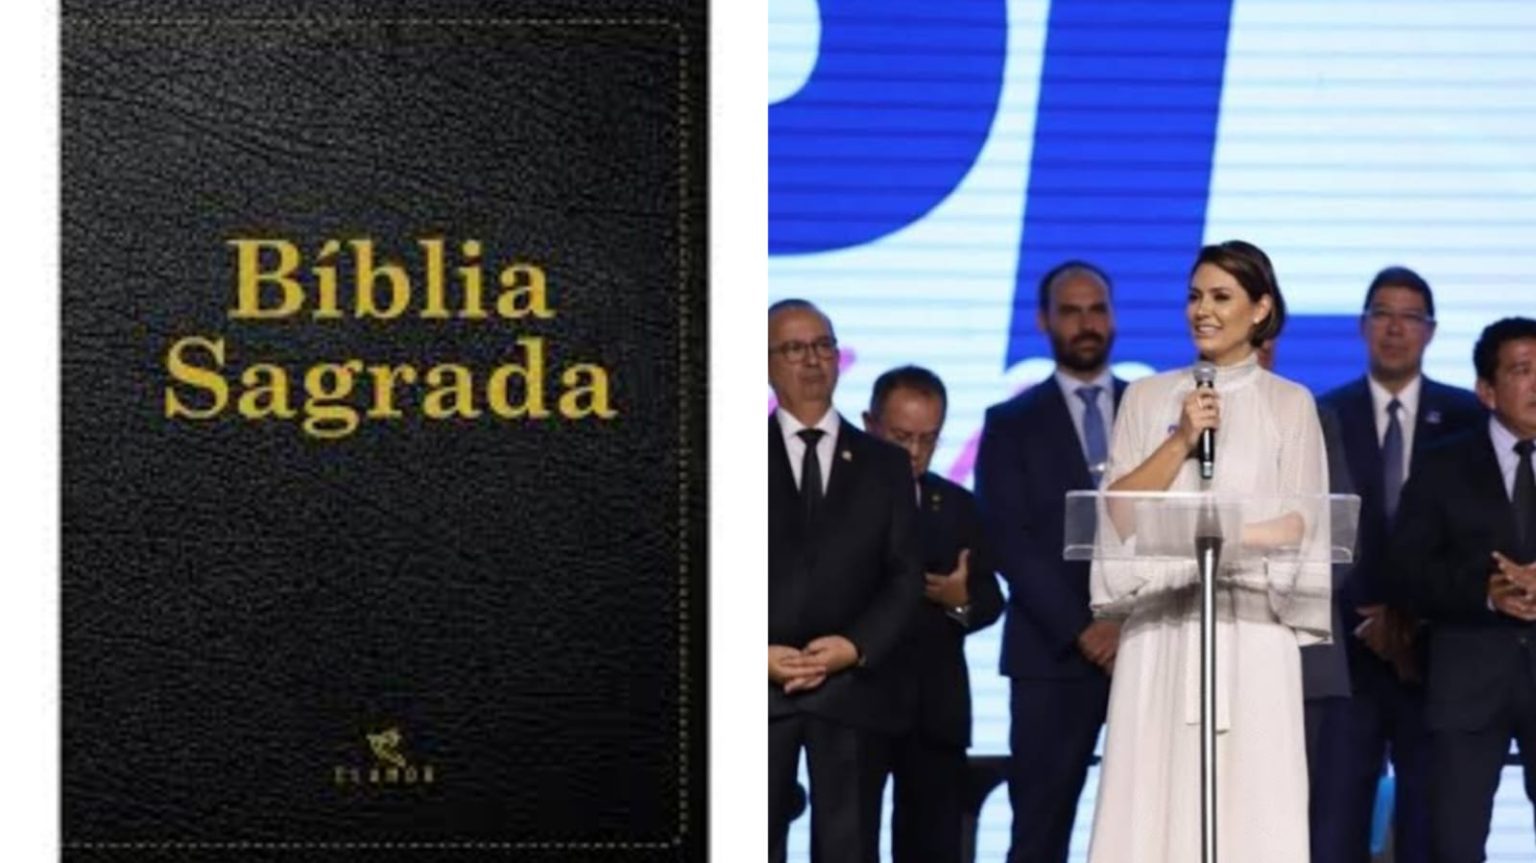 “Tirem os seus enfeites”: O que a Bíblia ensina sobre joias para Michelle Bolsonaro